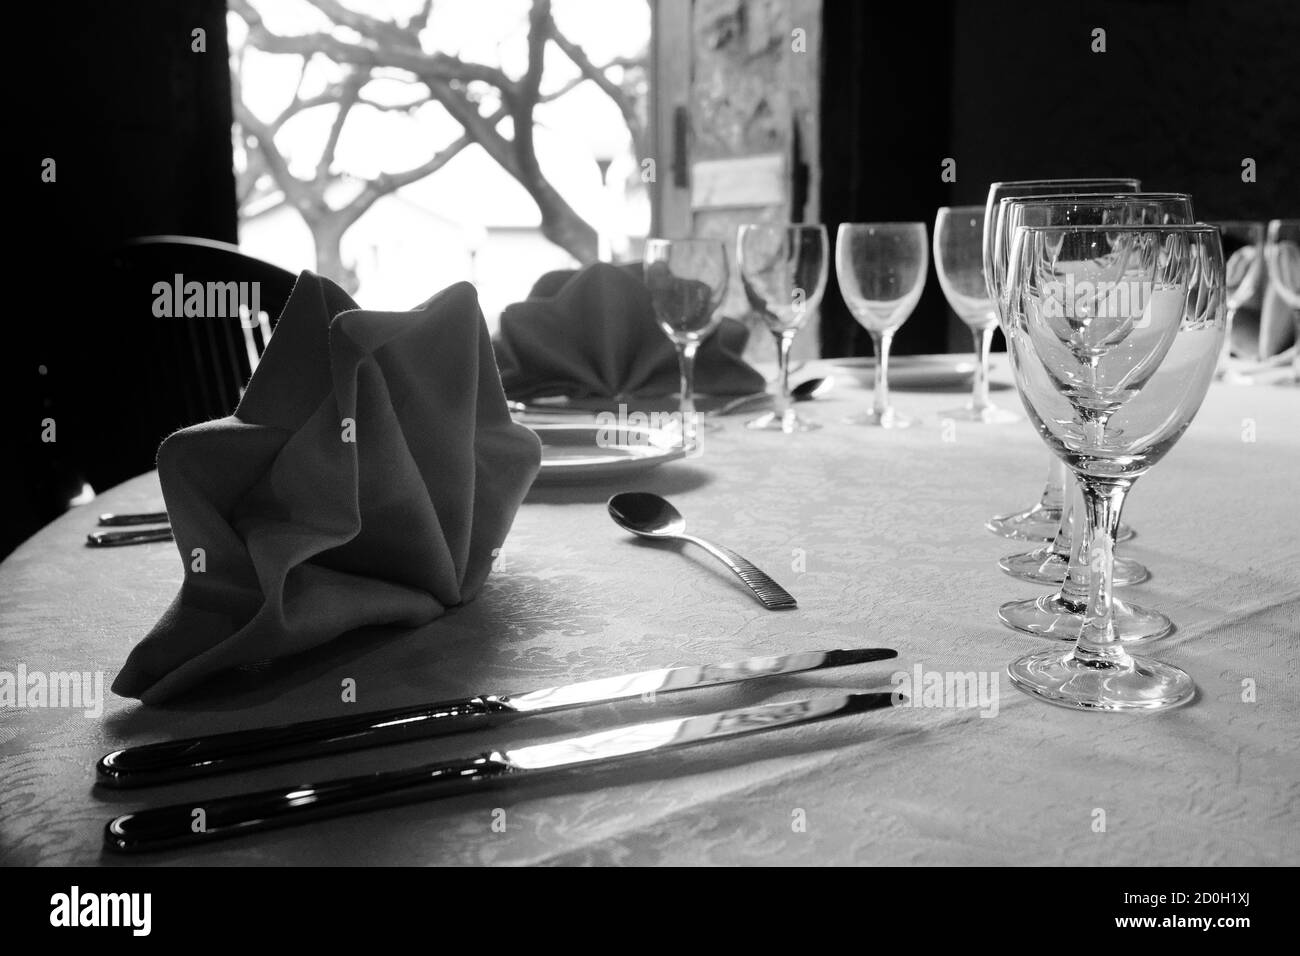 Table de restaurant et couverts en noir et blanc Banque D'Images